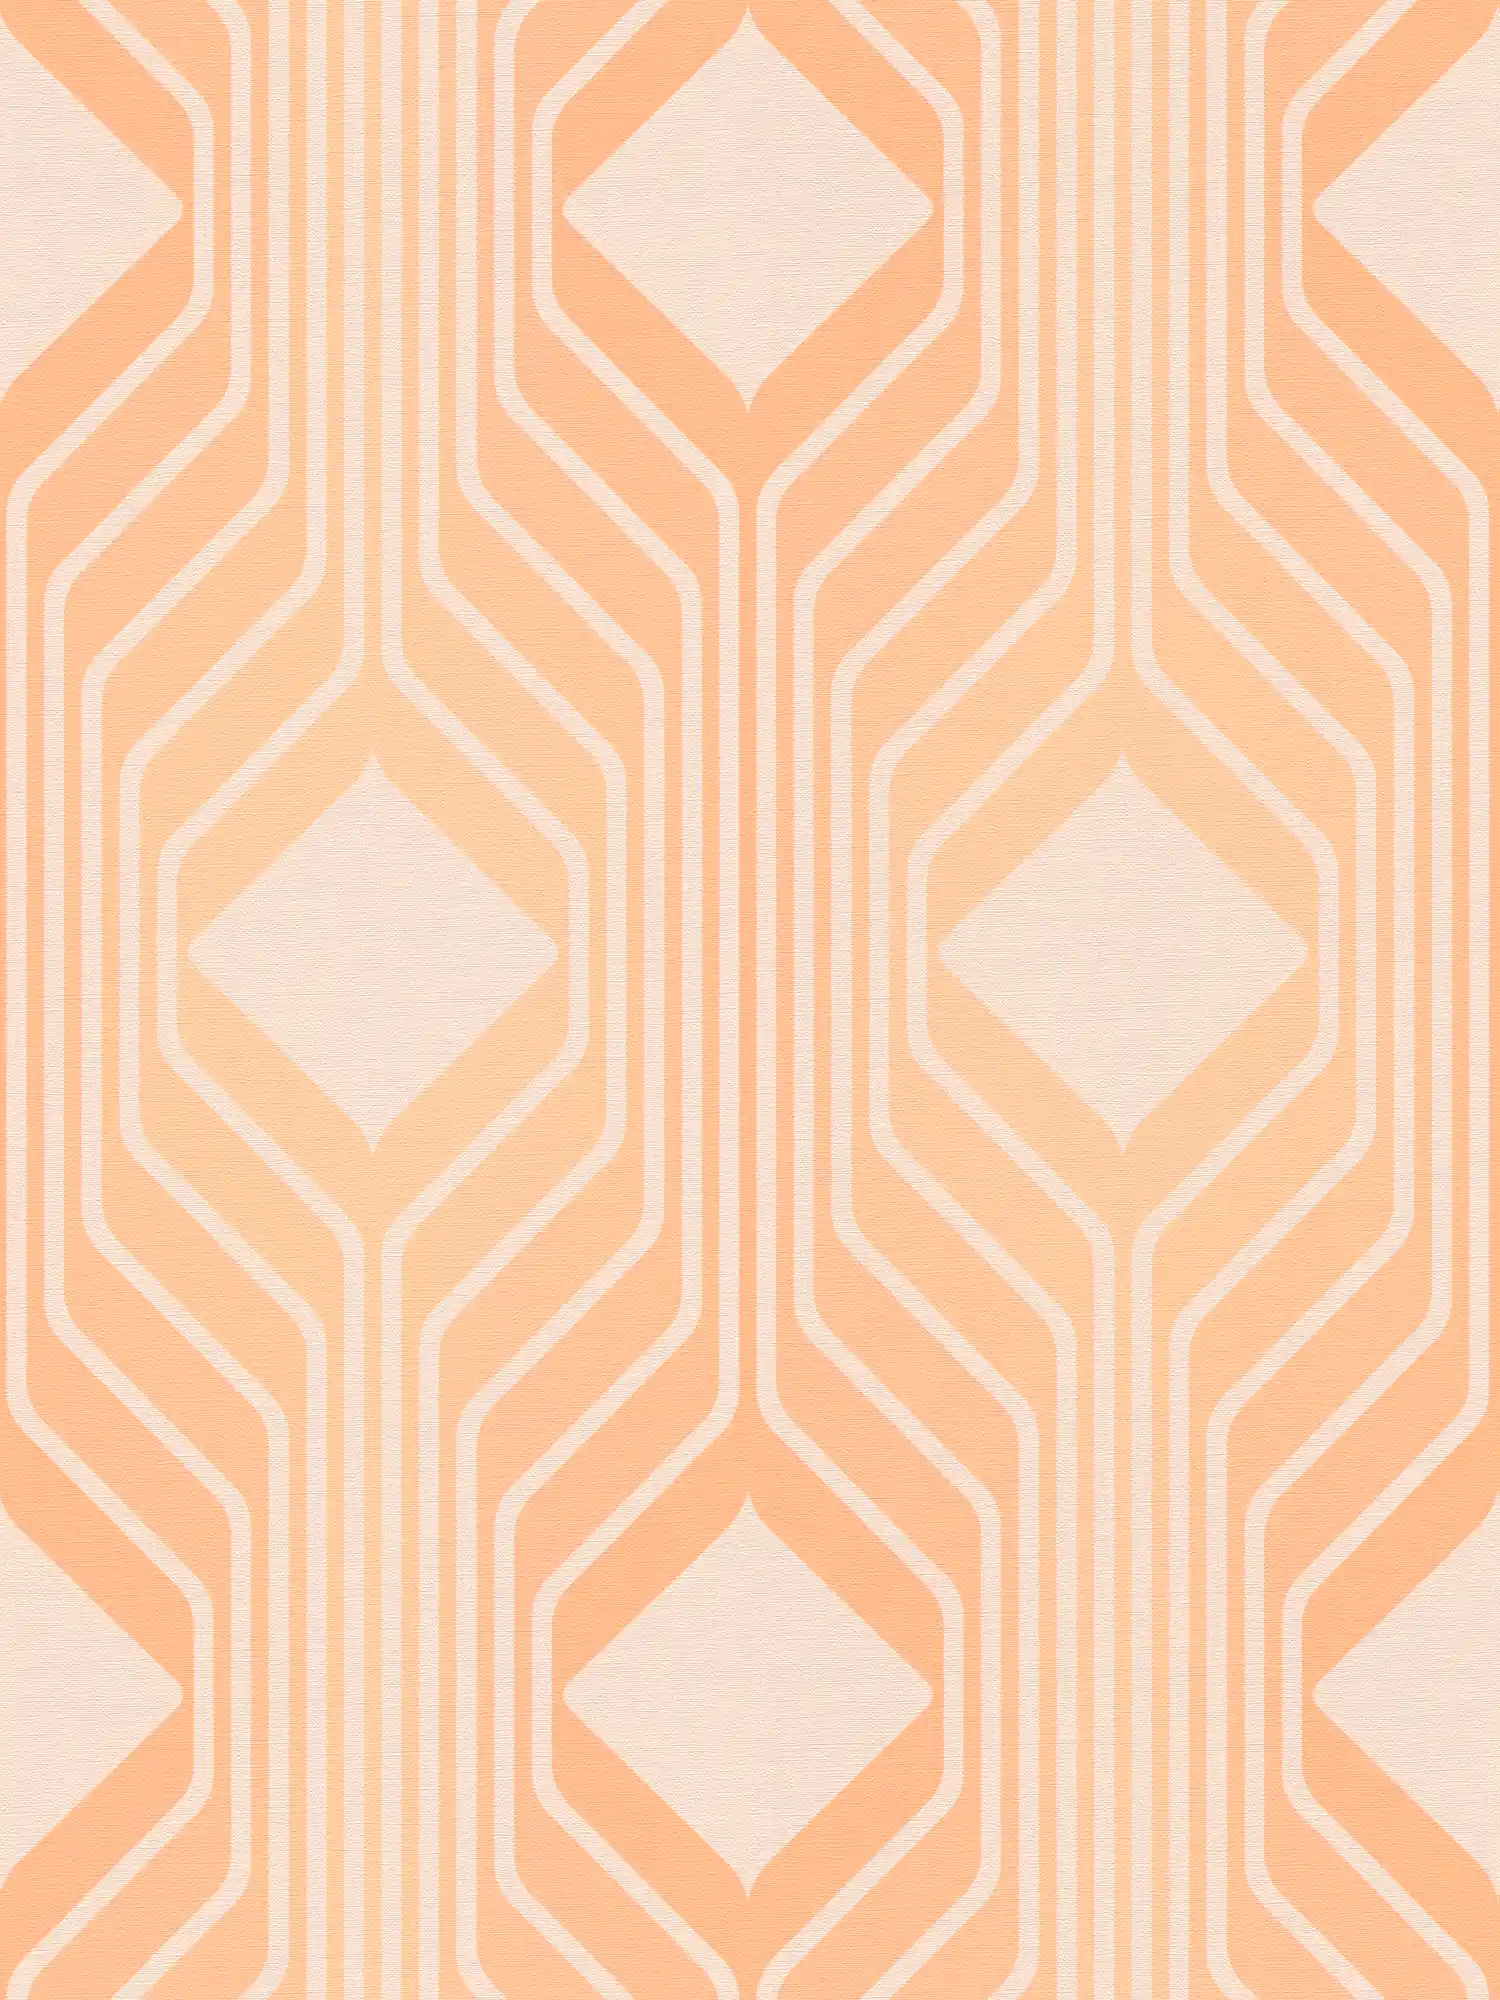         papier peint en papier rétro avec motifs en losange dans des couleurs chaudes - orange, beige
    